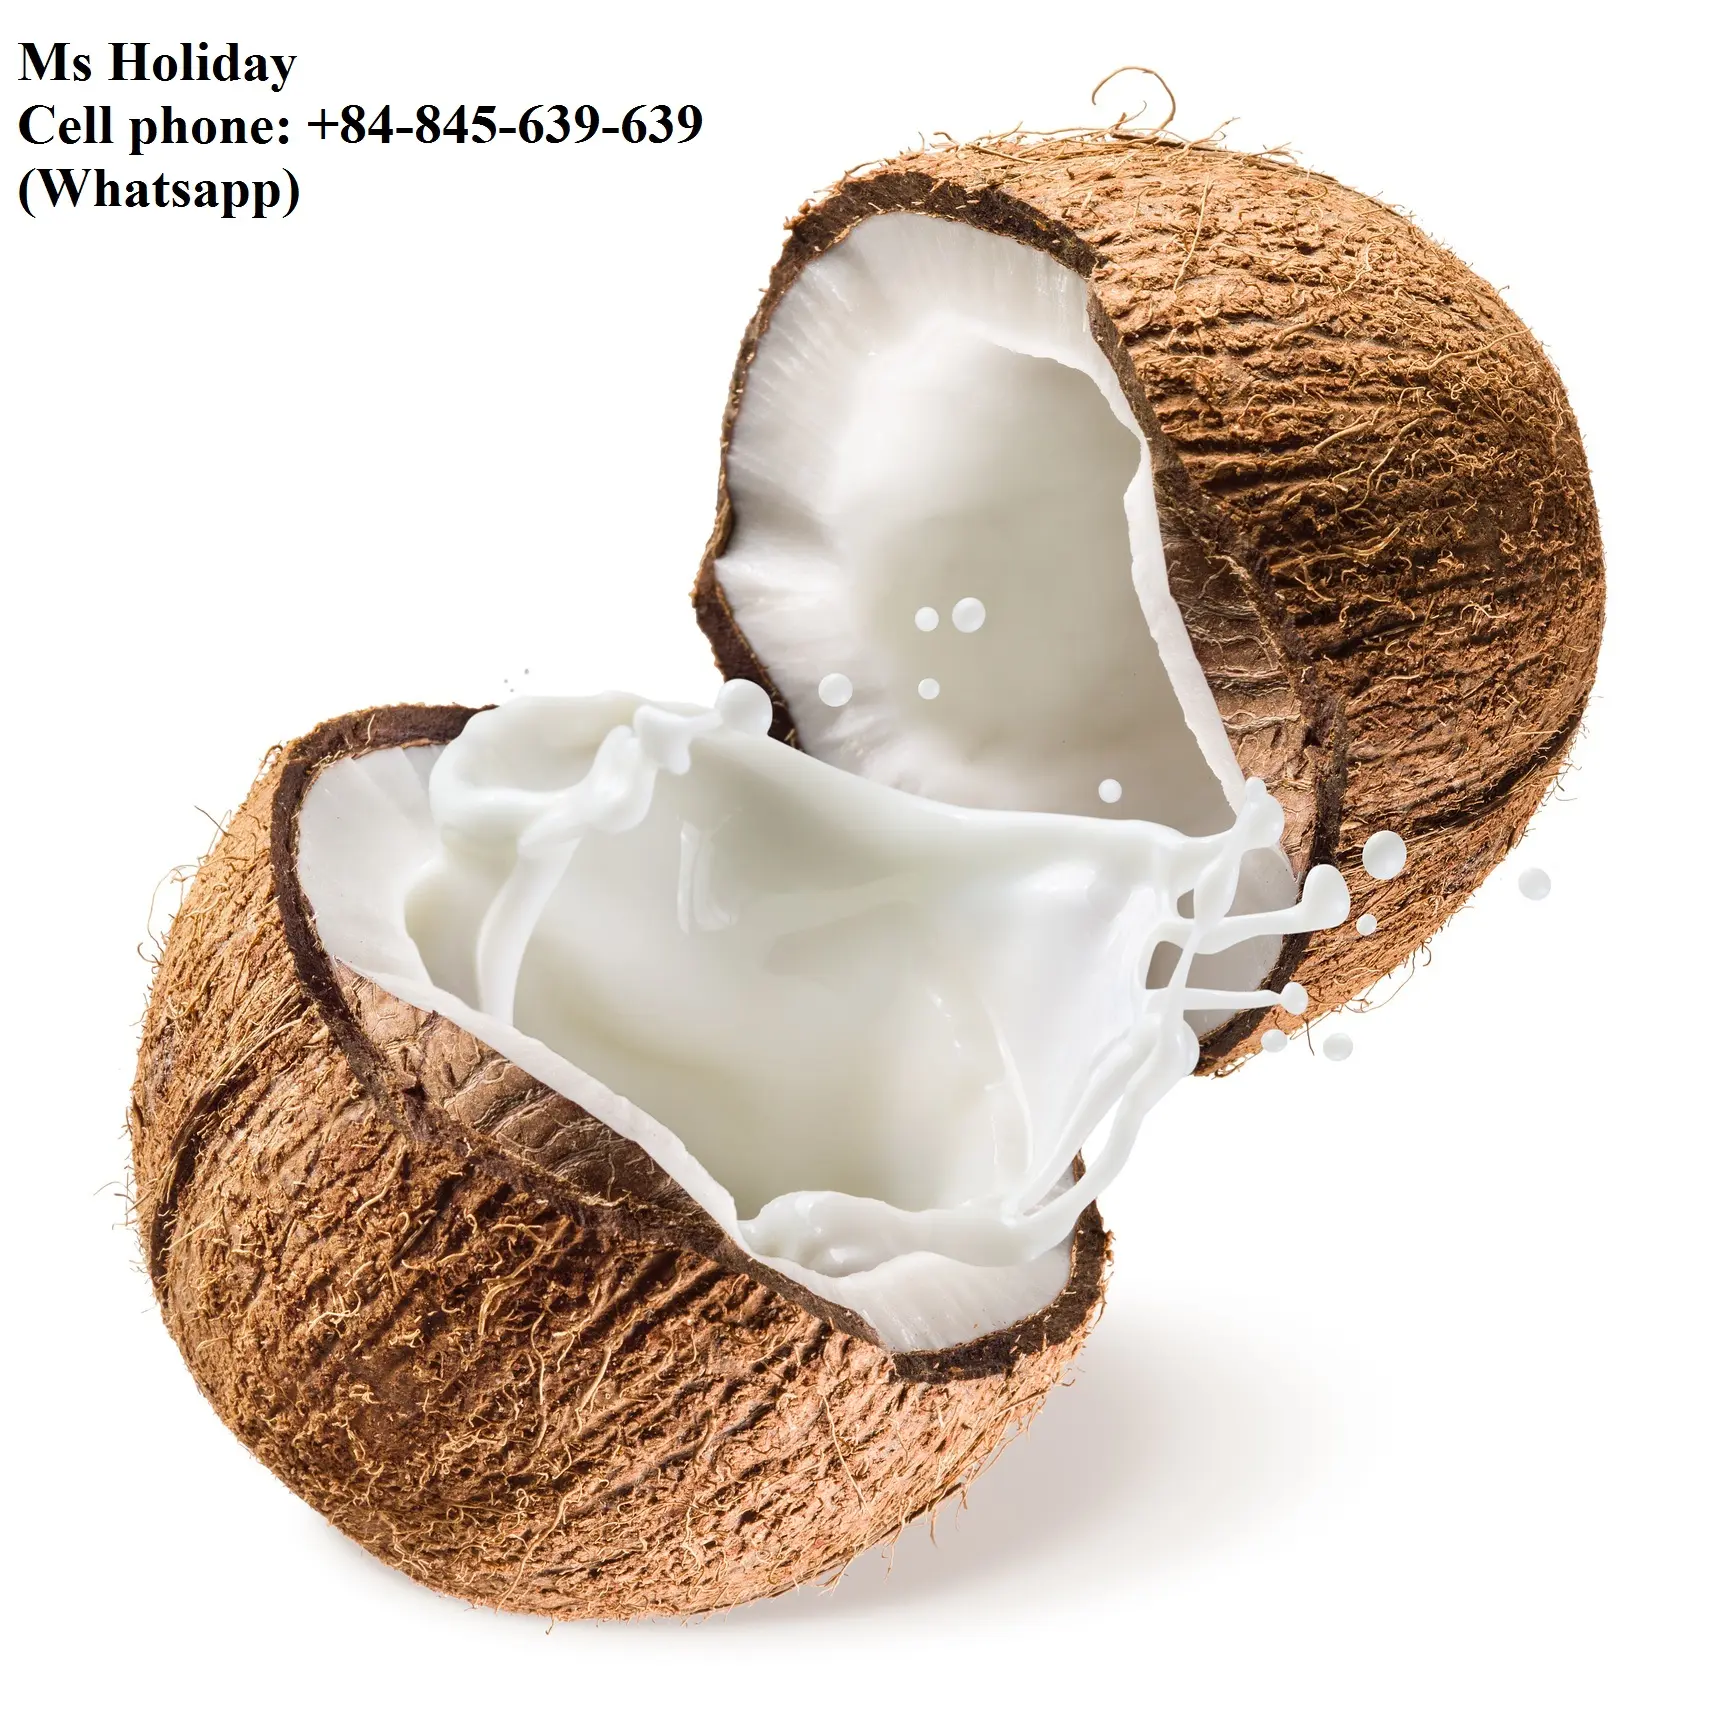 Noix de coco séchées au livraison gratuite, bon marché et de haute qualité, Whatsapp + 84, 845, 639, 639